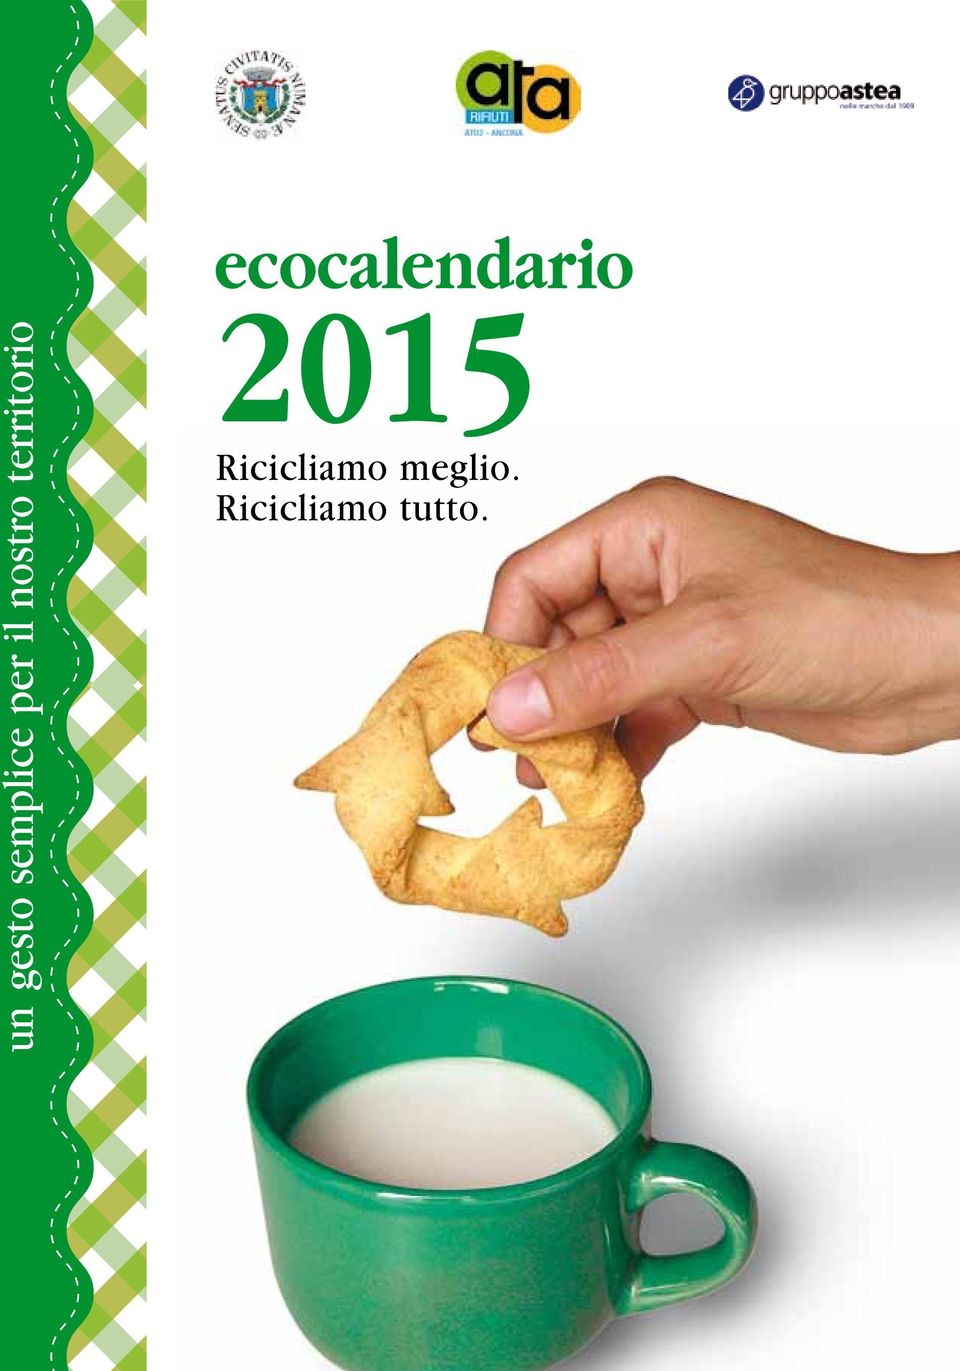 ecocalendario 2015